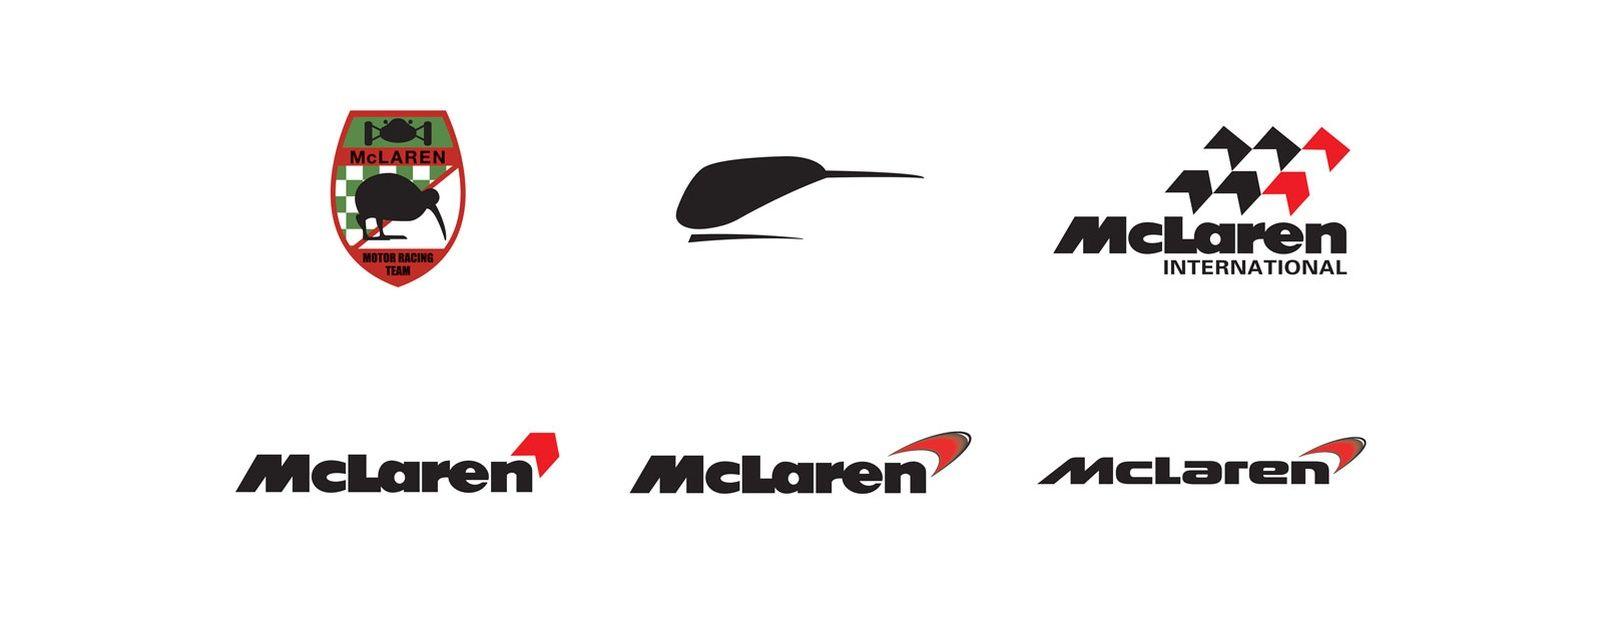 Maclaren Logo - McLaren Formula 1 - The Speedmark